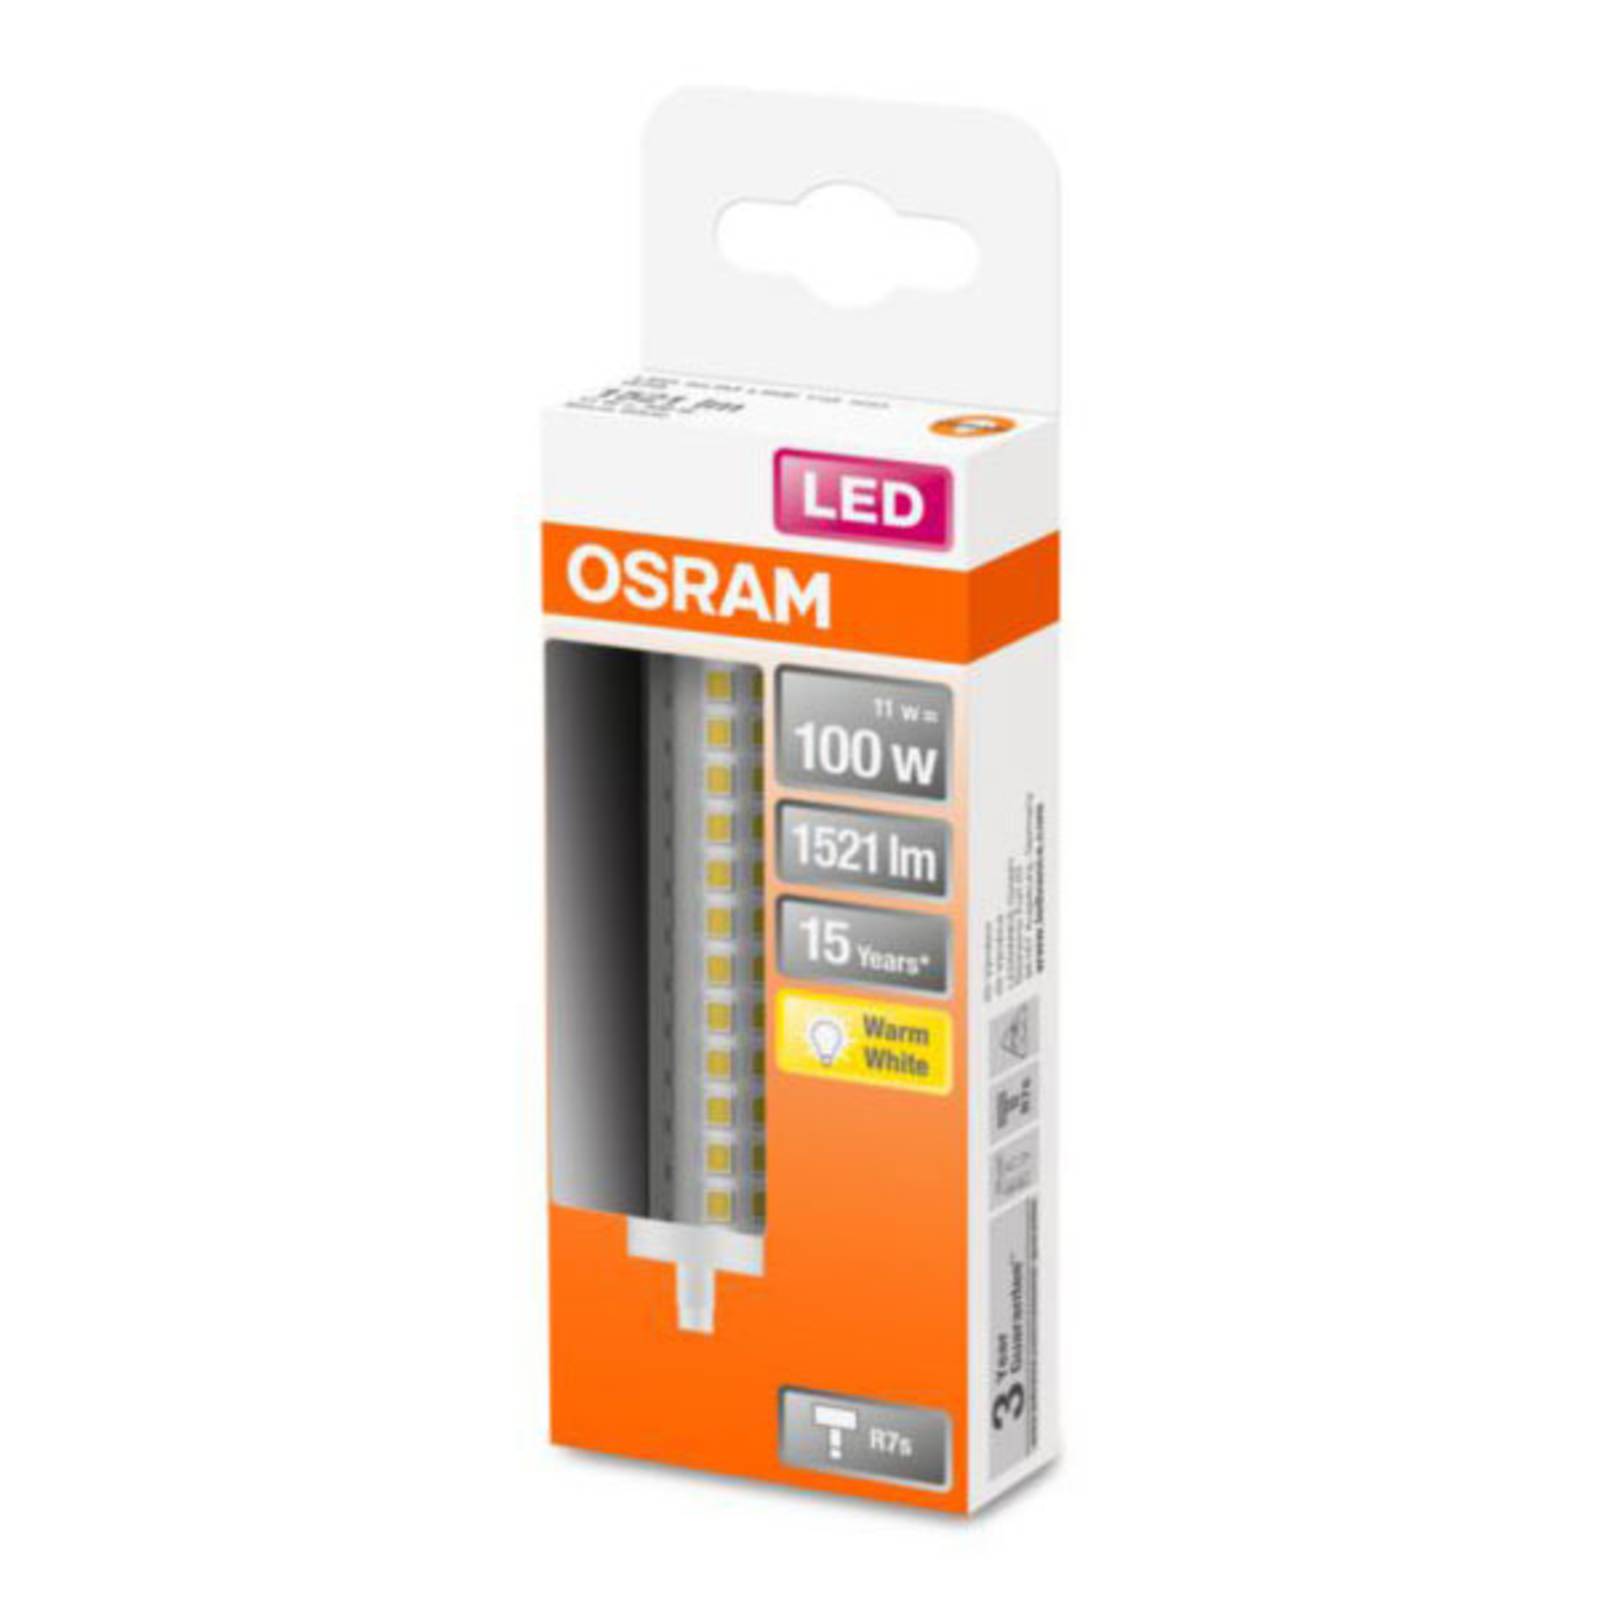 OSRAM LED-Lampe R7s 12W 2.700K von Osram